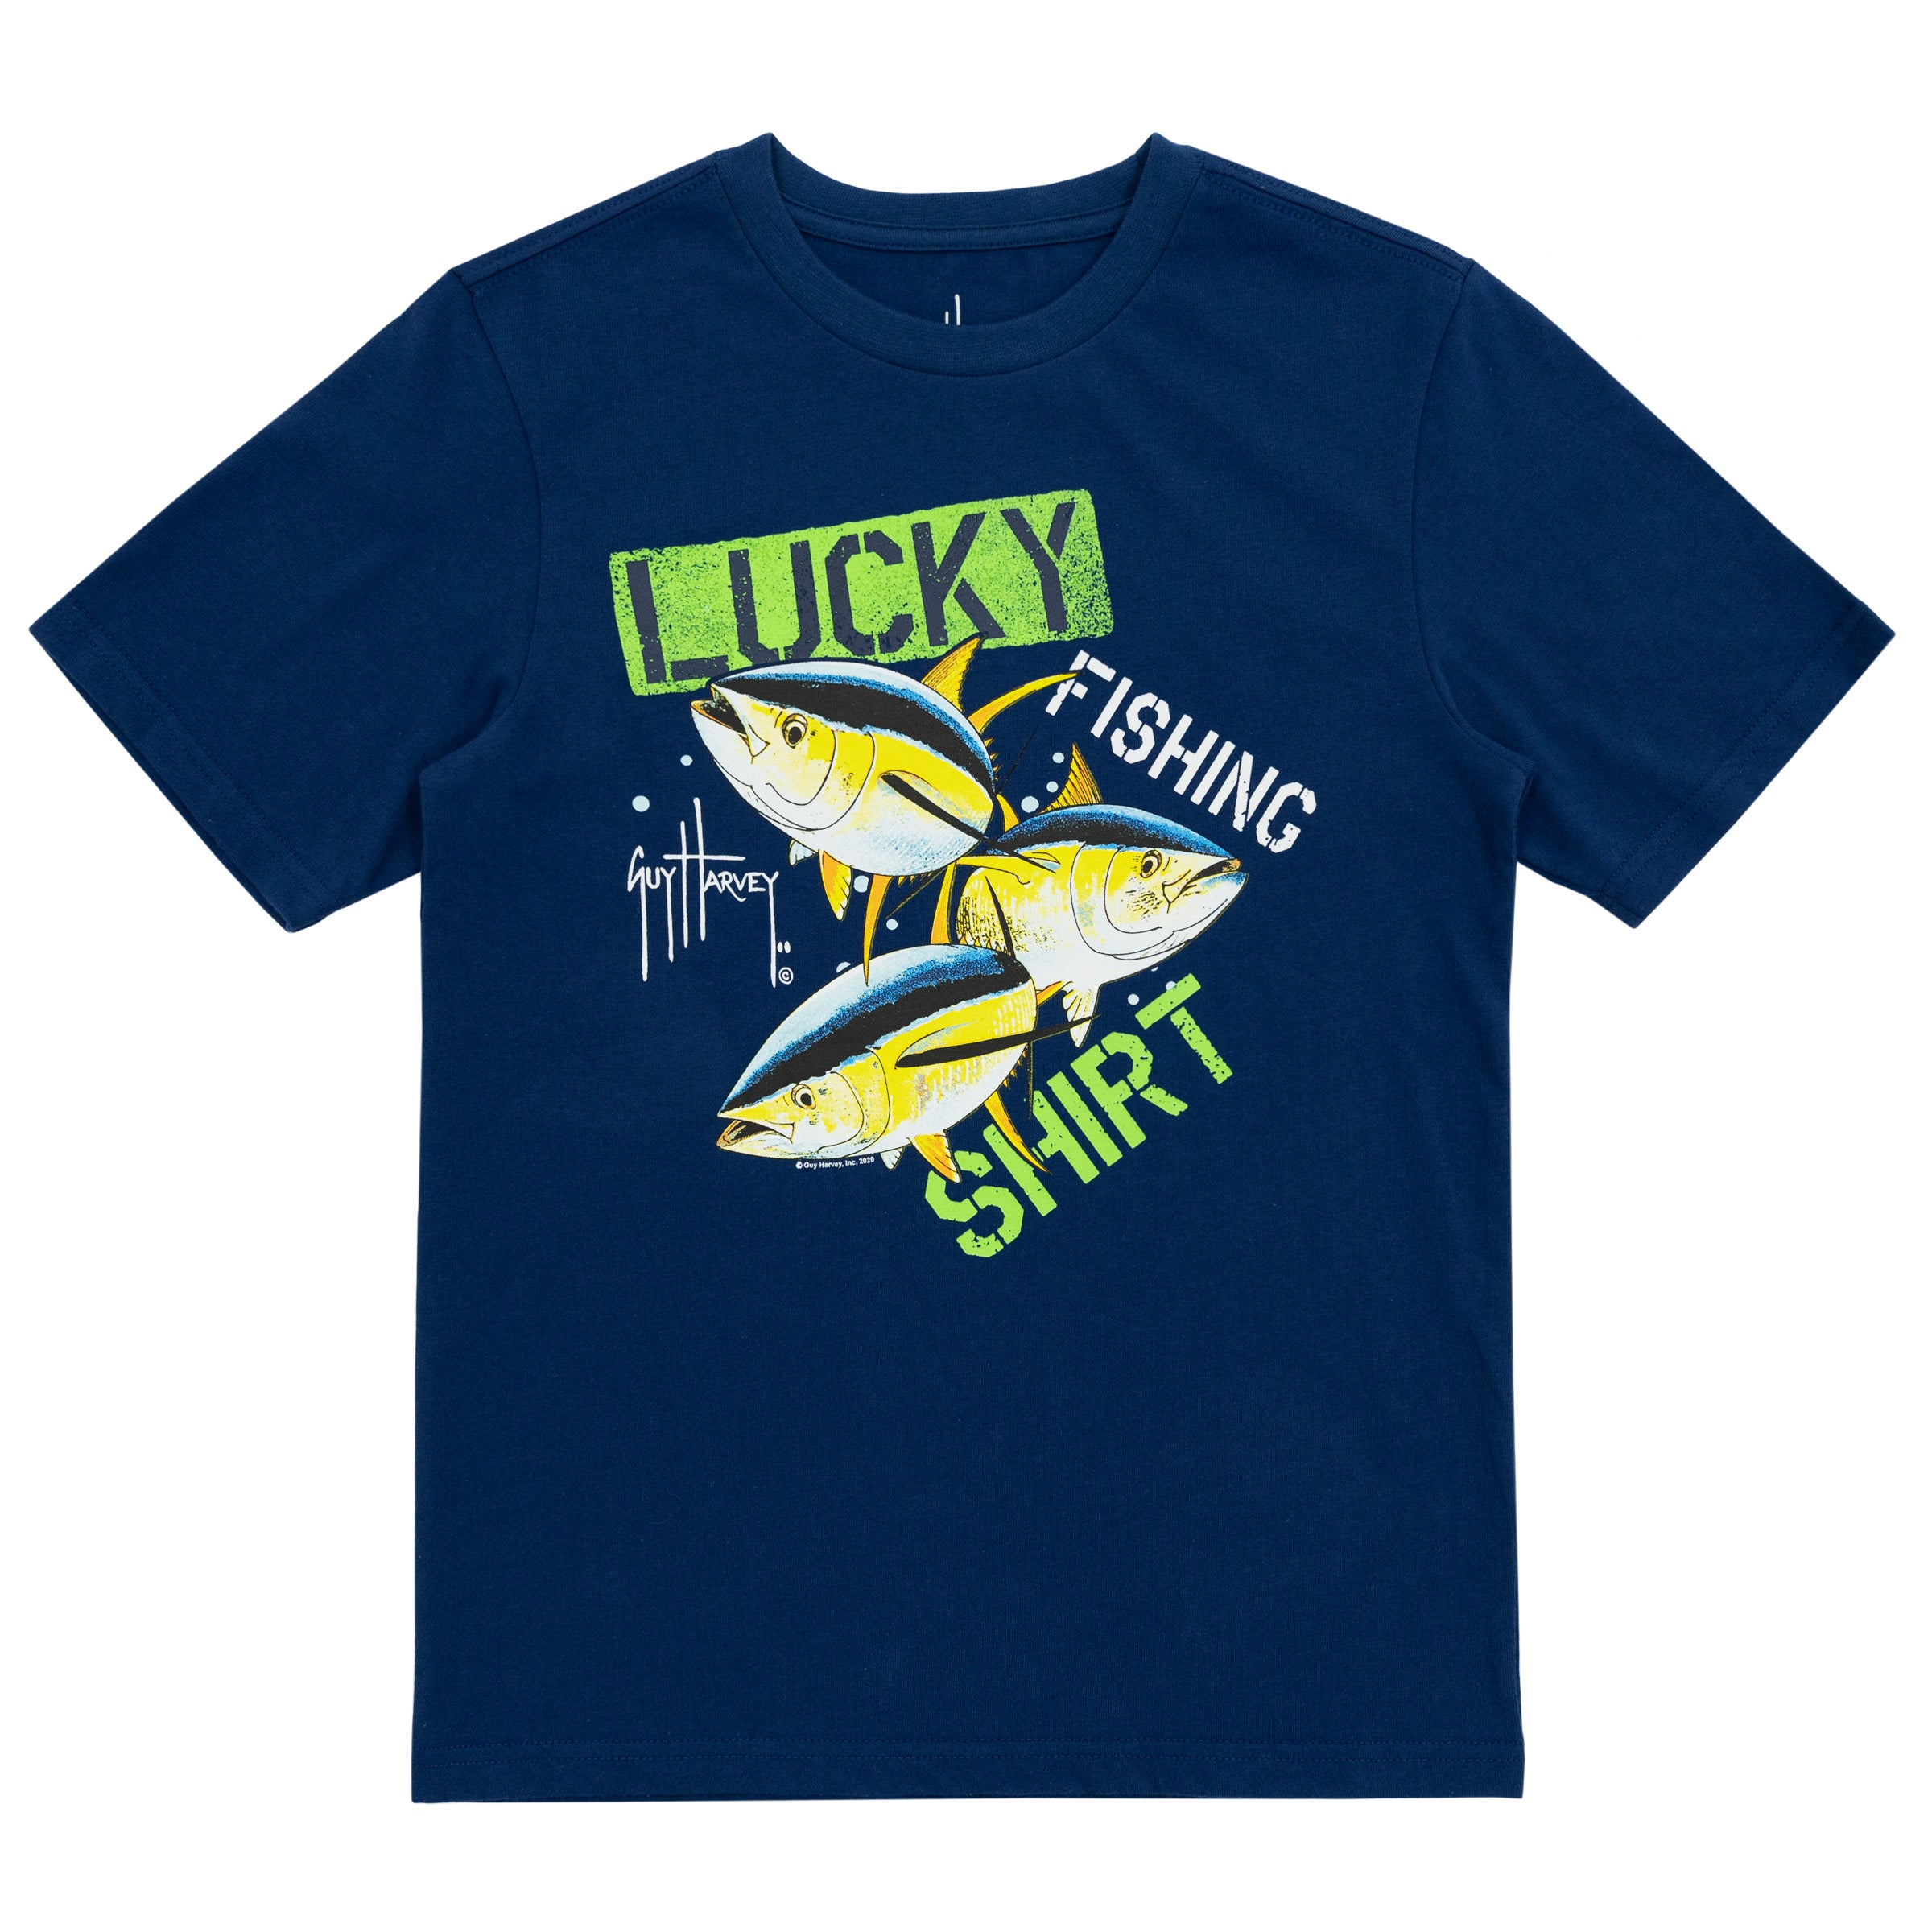 Lucky trout fishing shirt t-shirt